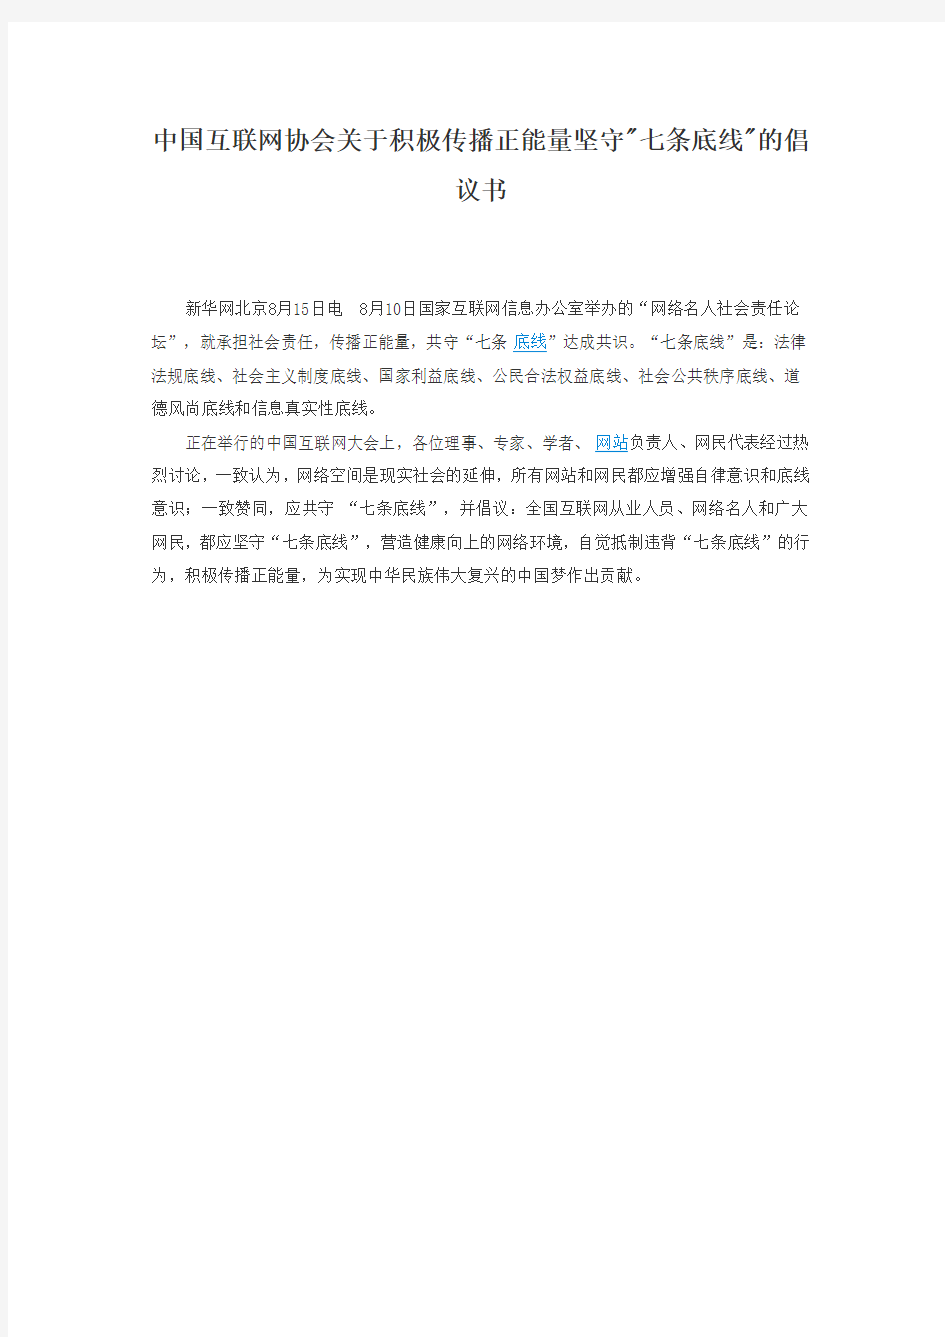 中国互联网协会关于积极传播正能量坚守